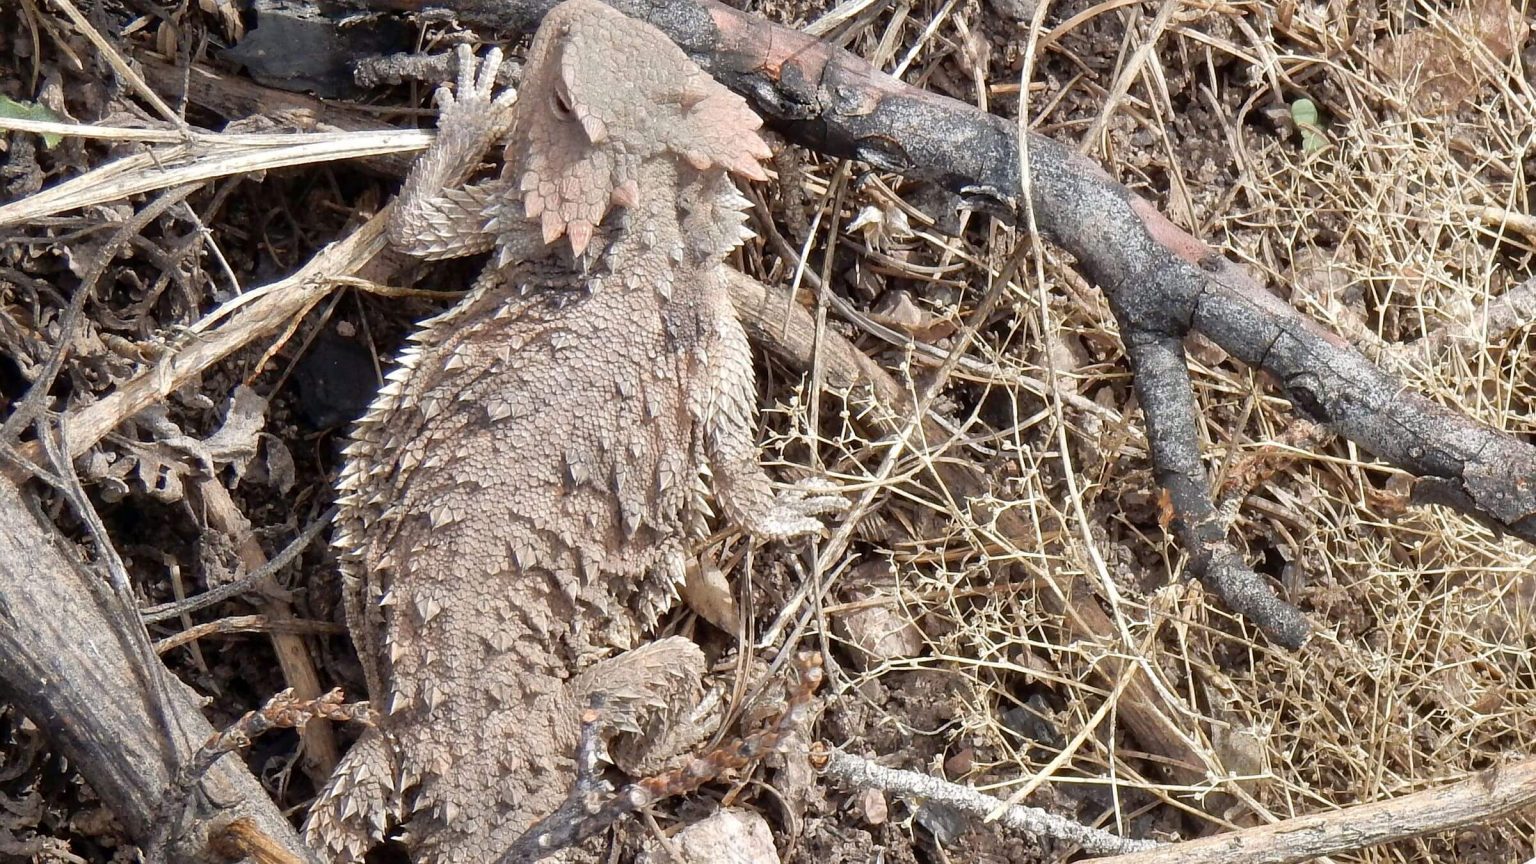 Galiuro Wilderness, greater short-horned lizard (Phrynosoma hernandesi), March